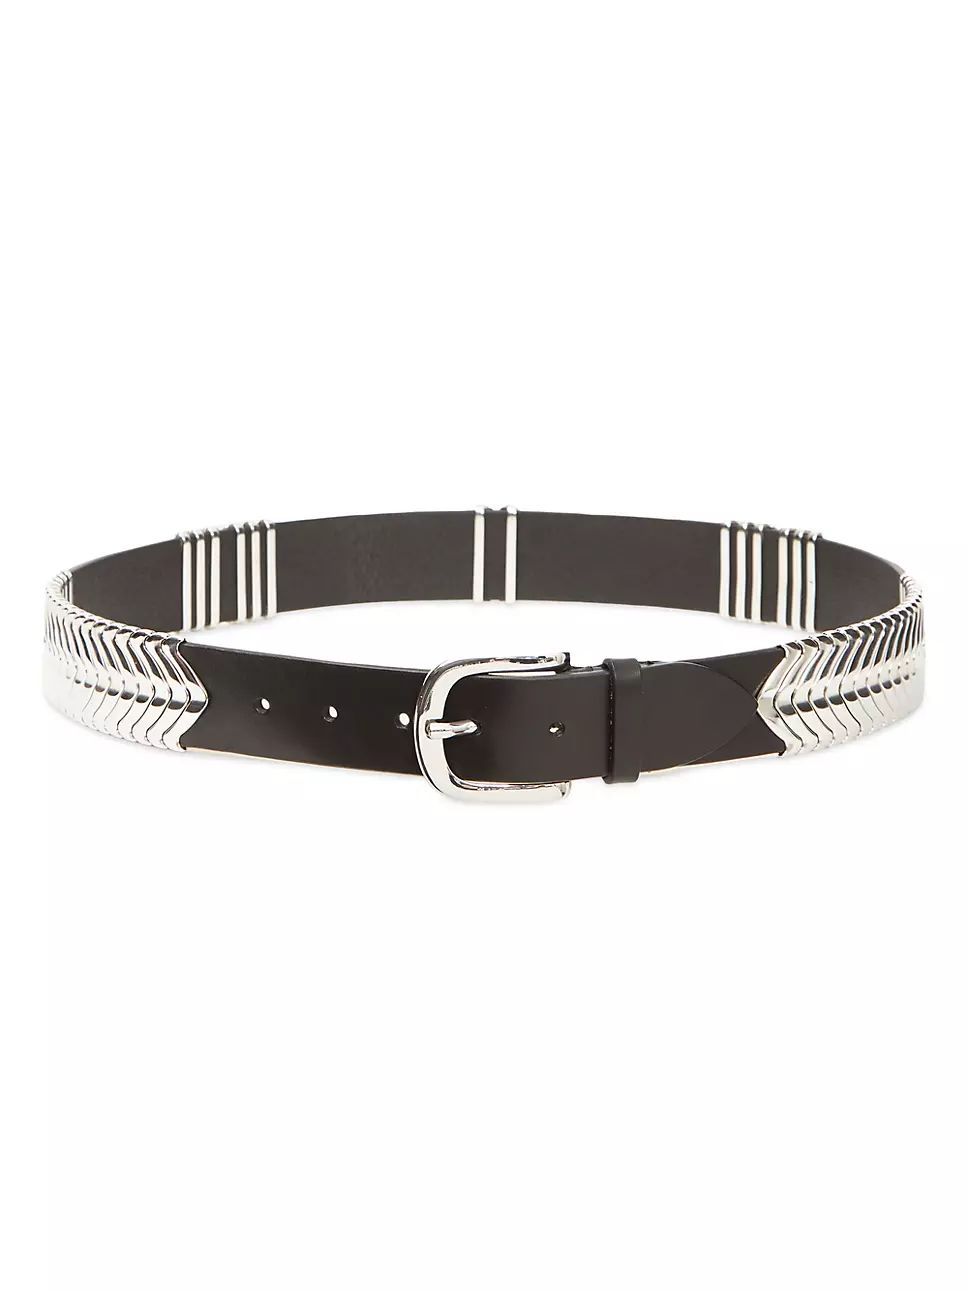 Tehora Embellished Leather Belt | Saks Fifth Avenue